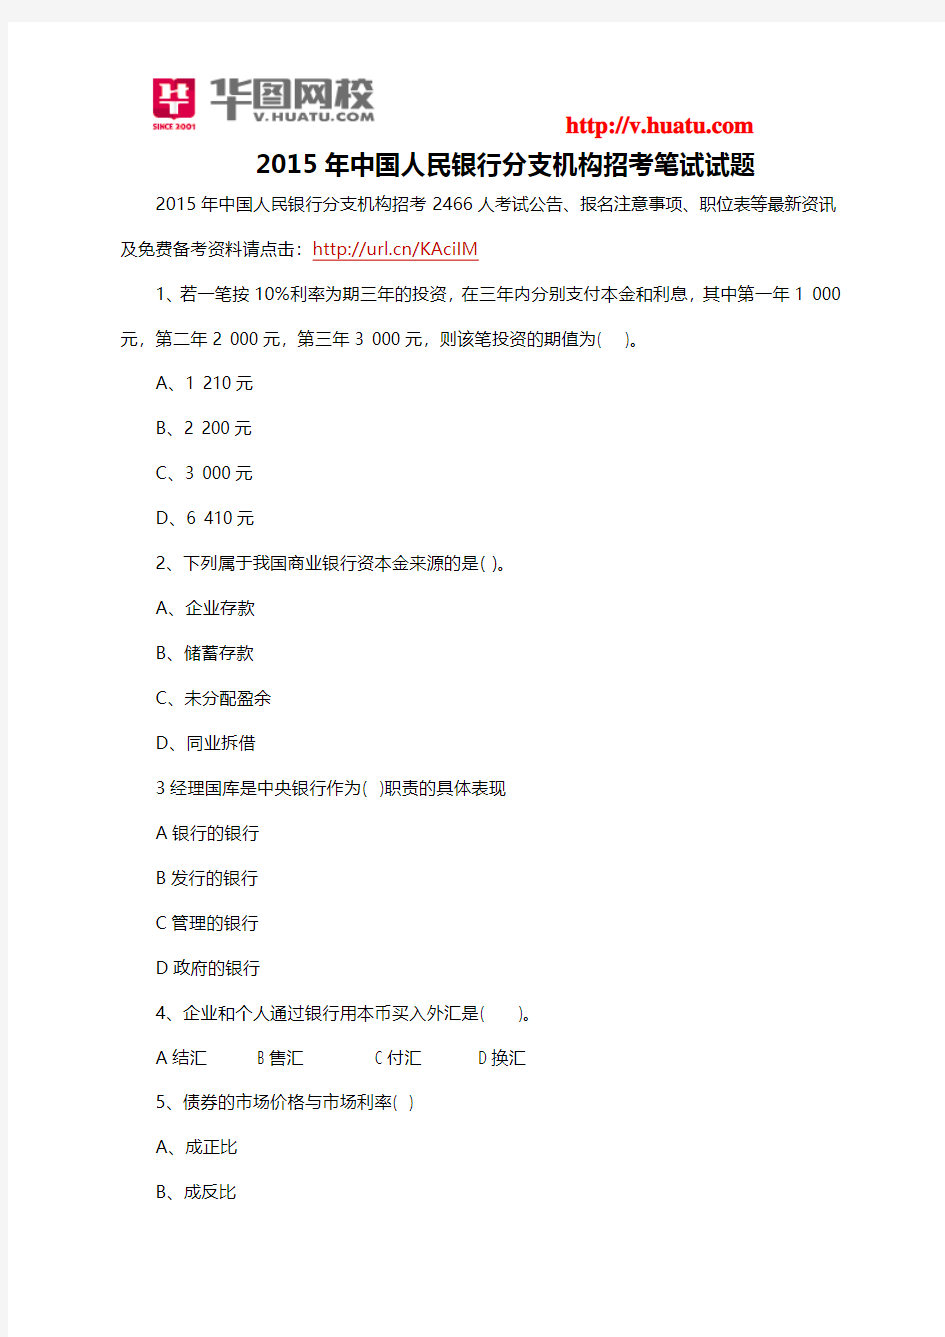 2015年中国人民银行分支机构招考笔试试题